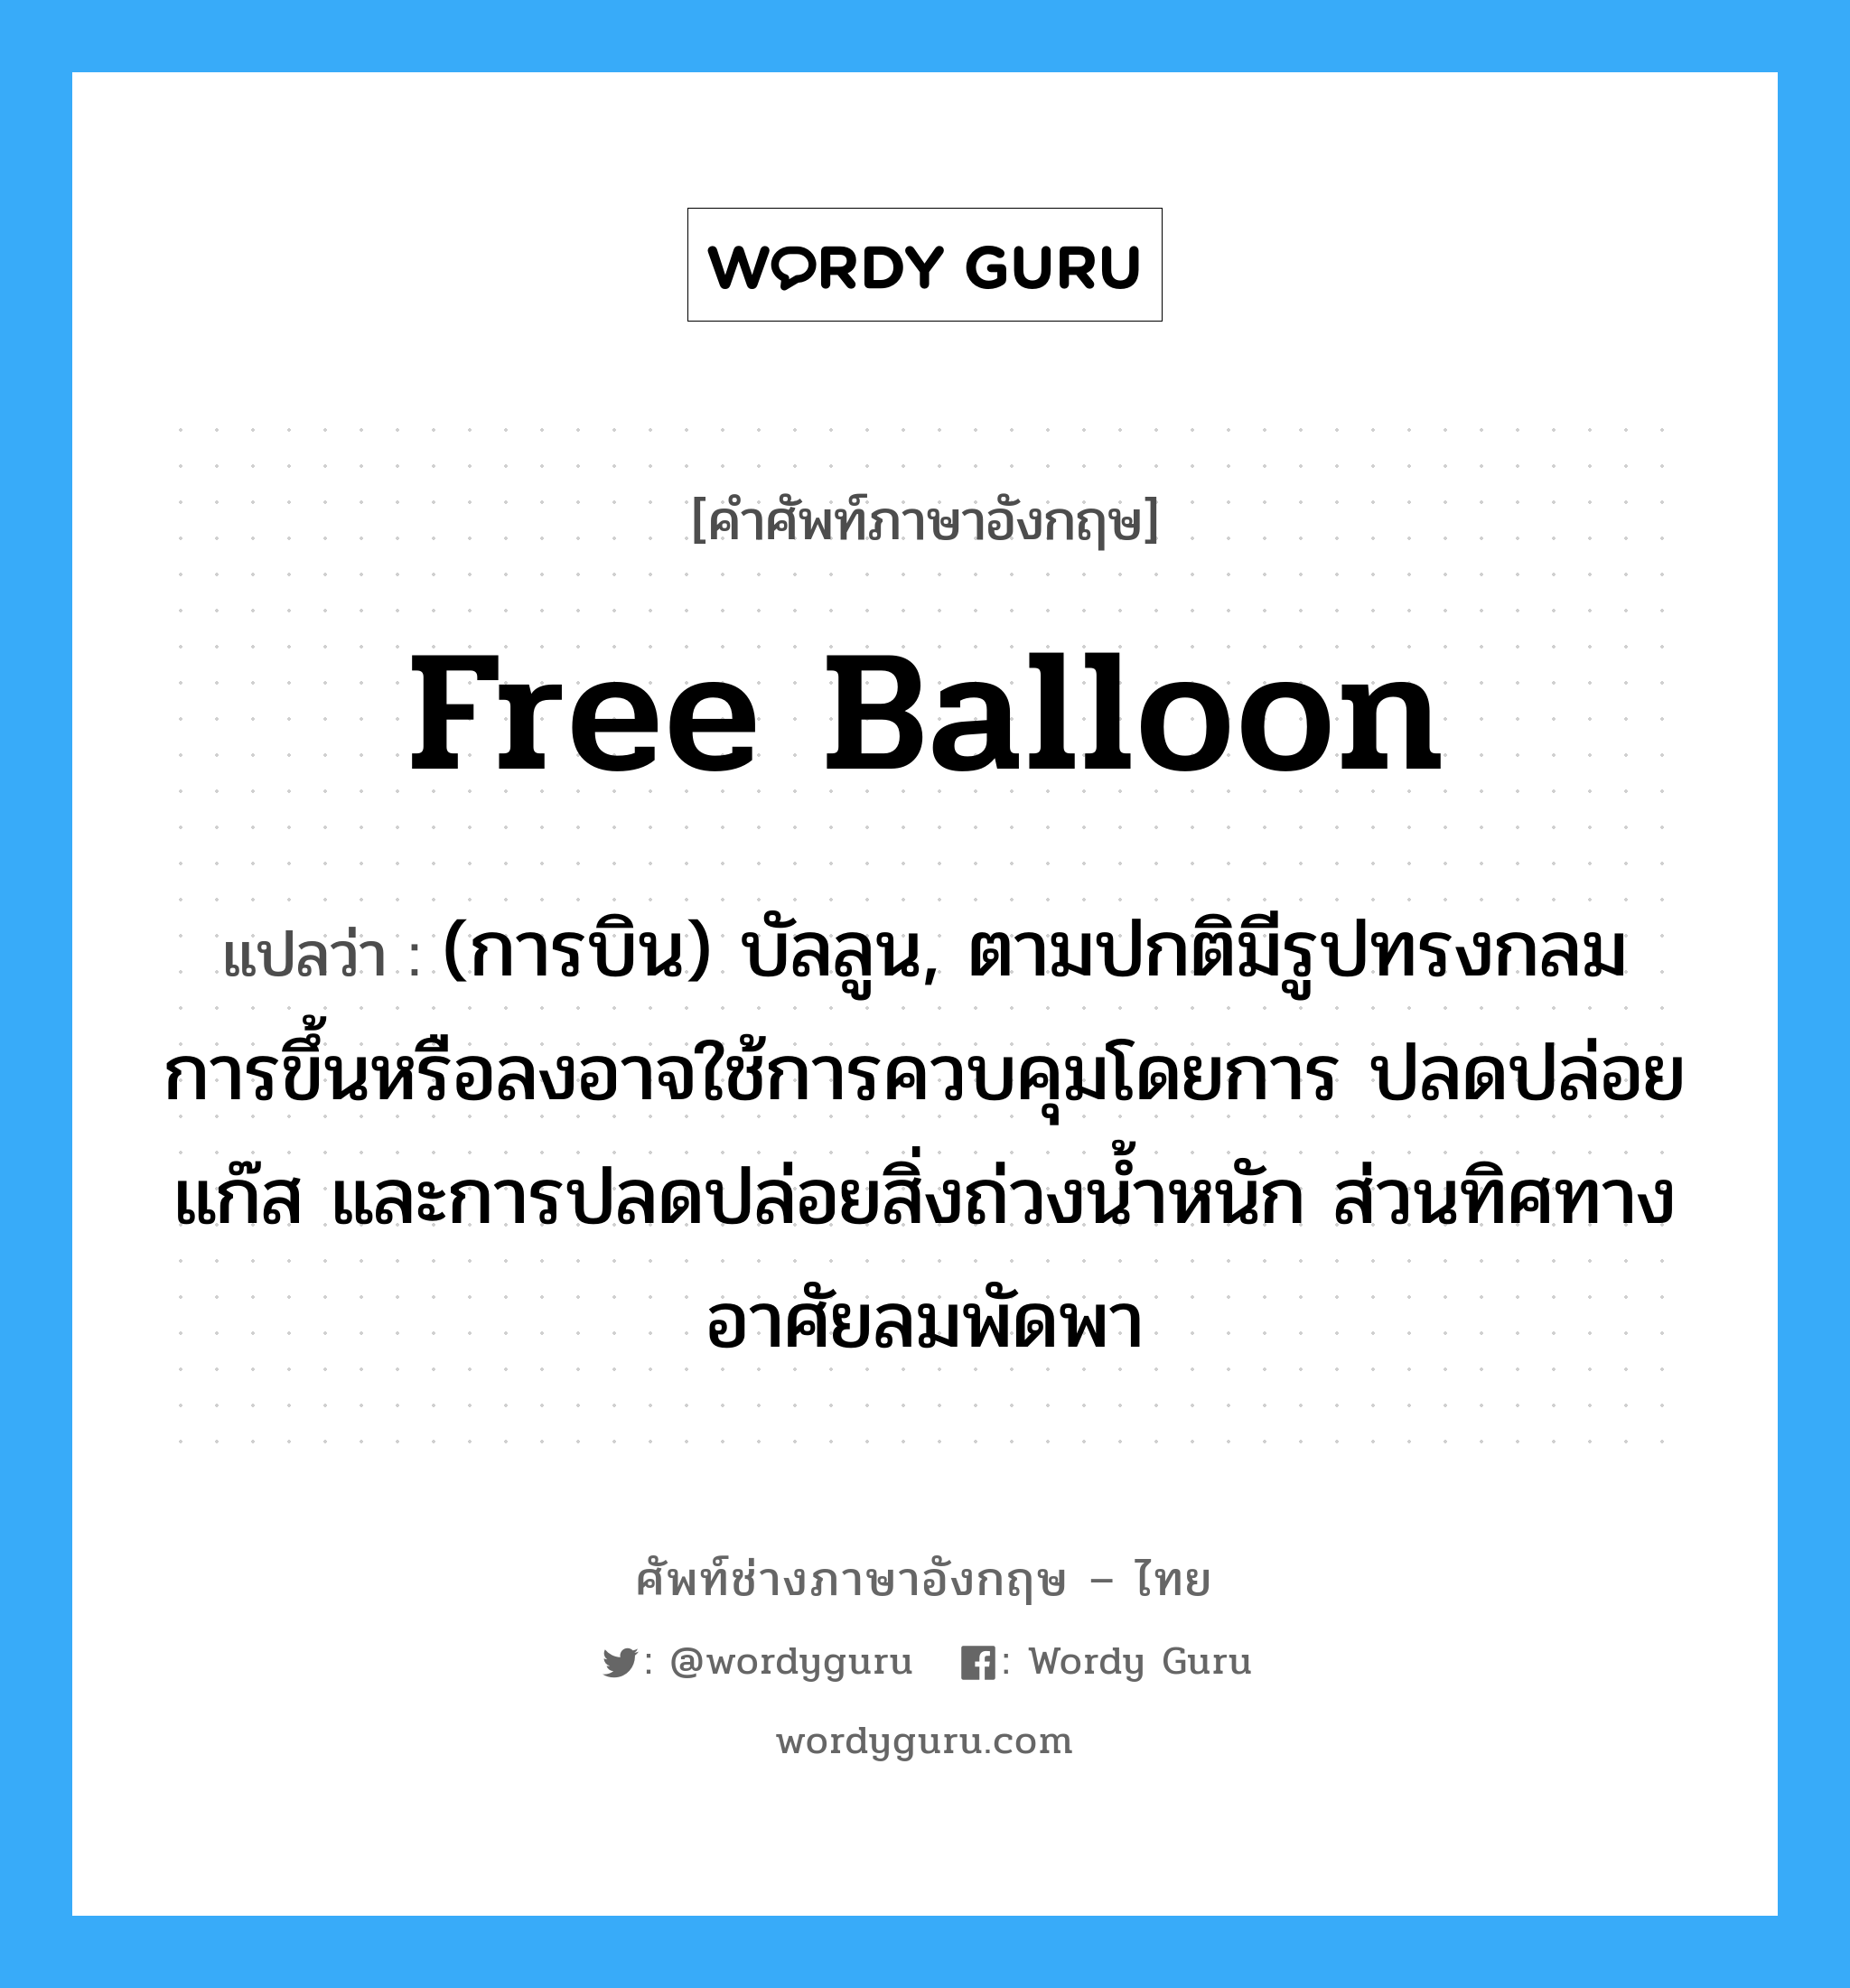 free balloon แปลว่า?, คำศัพท์ช่างภาษาอังกฤษ - ไทย free balloon คำศัพท์ภาษาอังกฤษ free balloon แปลว่า (การบิน) บัลลูน, ตามปกติมีรูปทรงกลม การขึ้นหรือลงอาจใช้การควบคุมโดยการ ปลดปล่อยแก๊ส และการปลดปล่อยสิ่งถ่วงน้ำหนัก ส่วนทิศทางอาศัยลมพัดพา